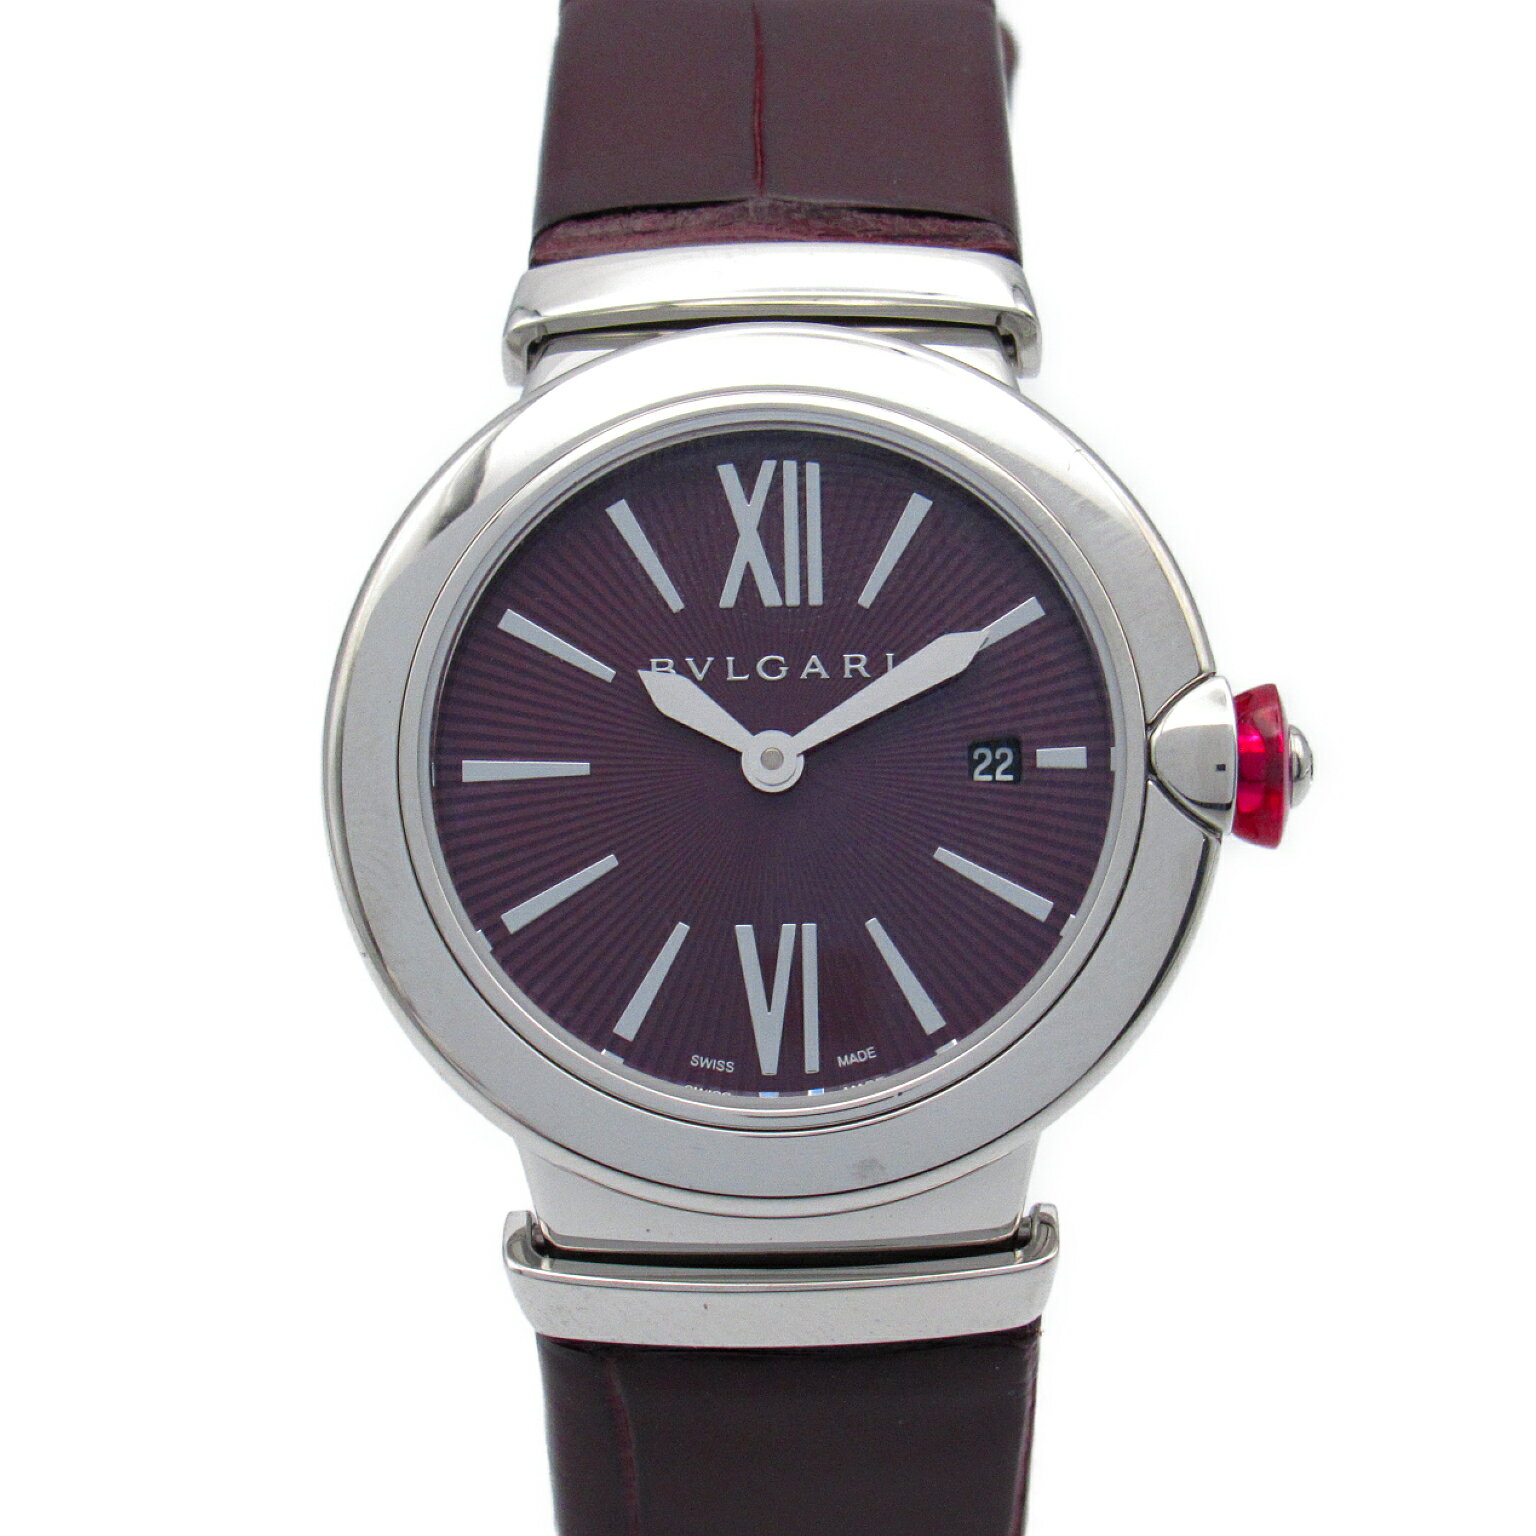 ブルガリ BVLGARI ルチェア 腕時計 時計 ステンレススチール レザーベルト クロコ革 レディース ボルドー系 LU28S 【中古】